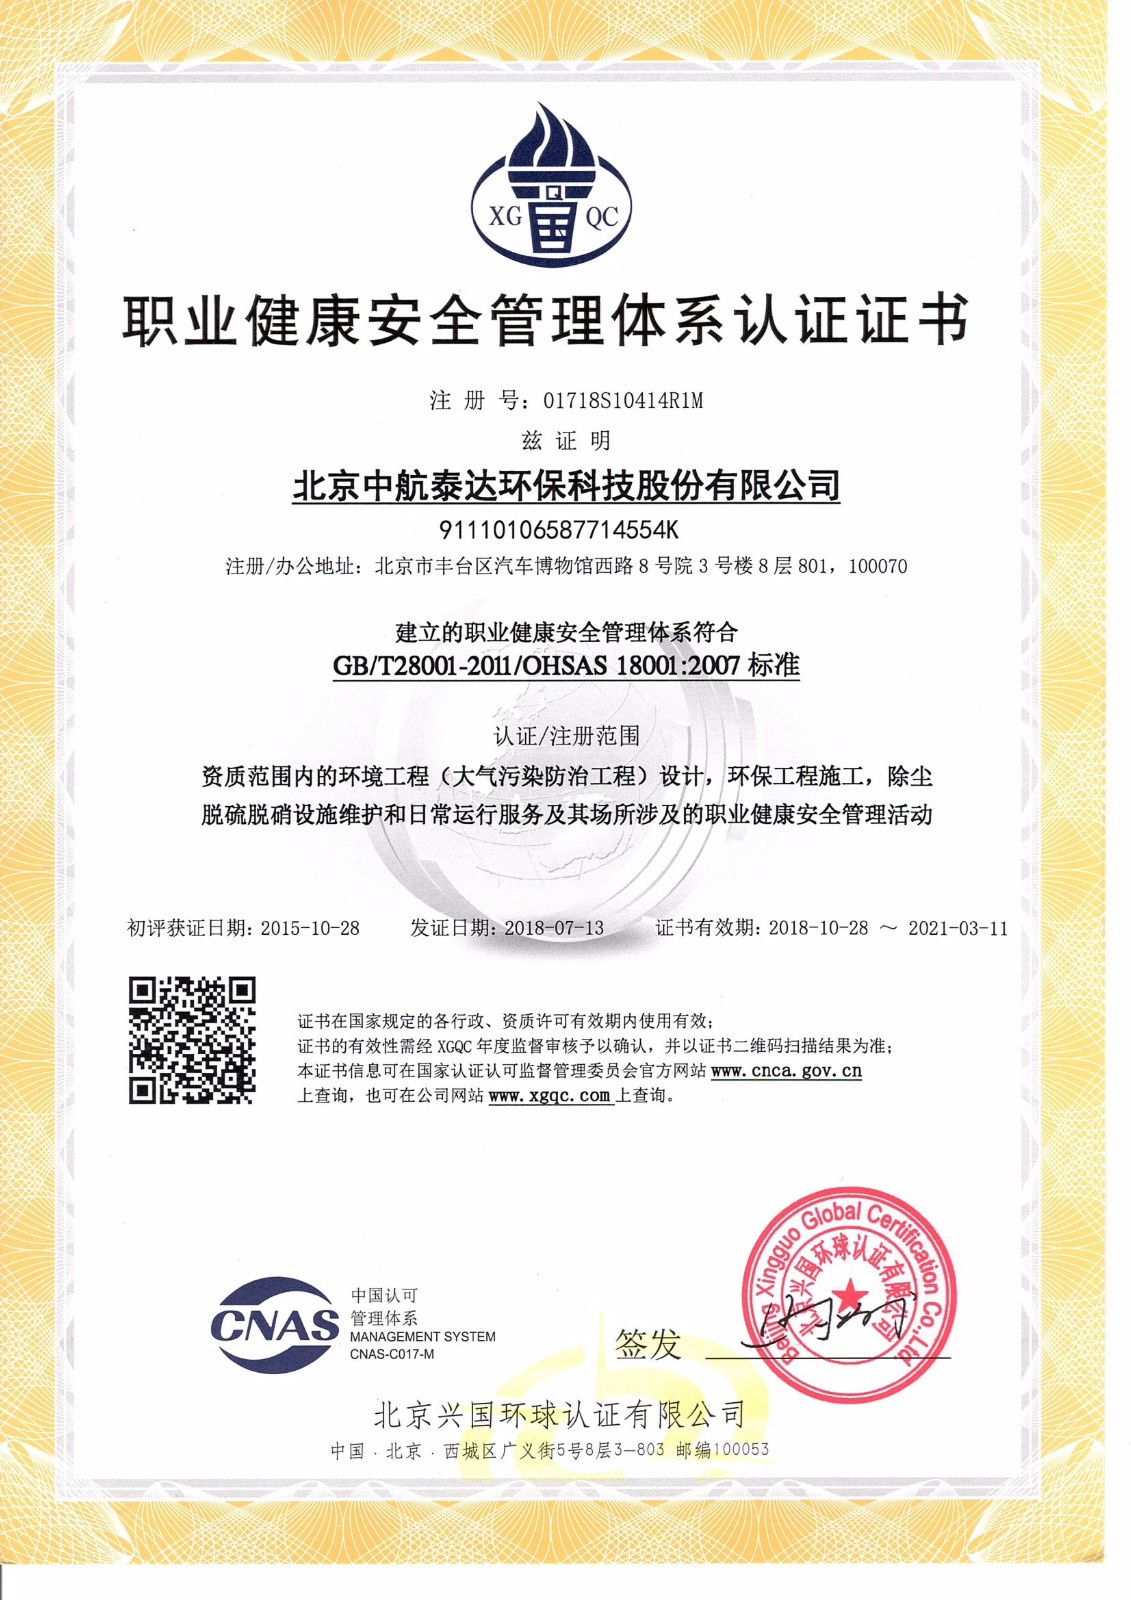 职业健康安全管理体系认证证书-中文.jpg